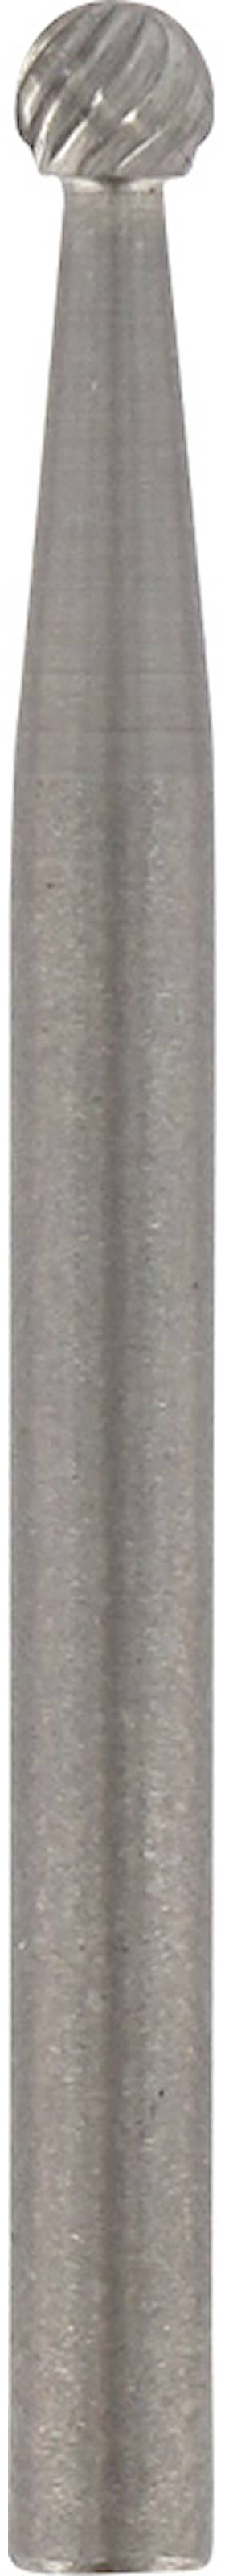 Dremel slibestift karbid 3,2 mm hårdmetal 9905